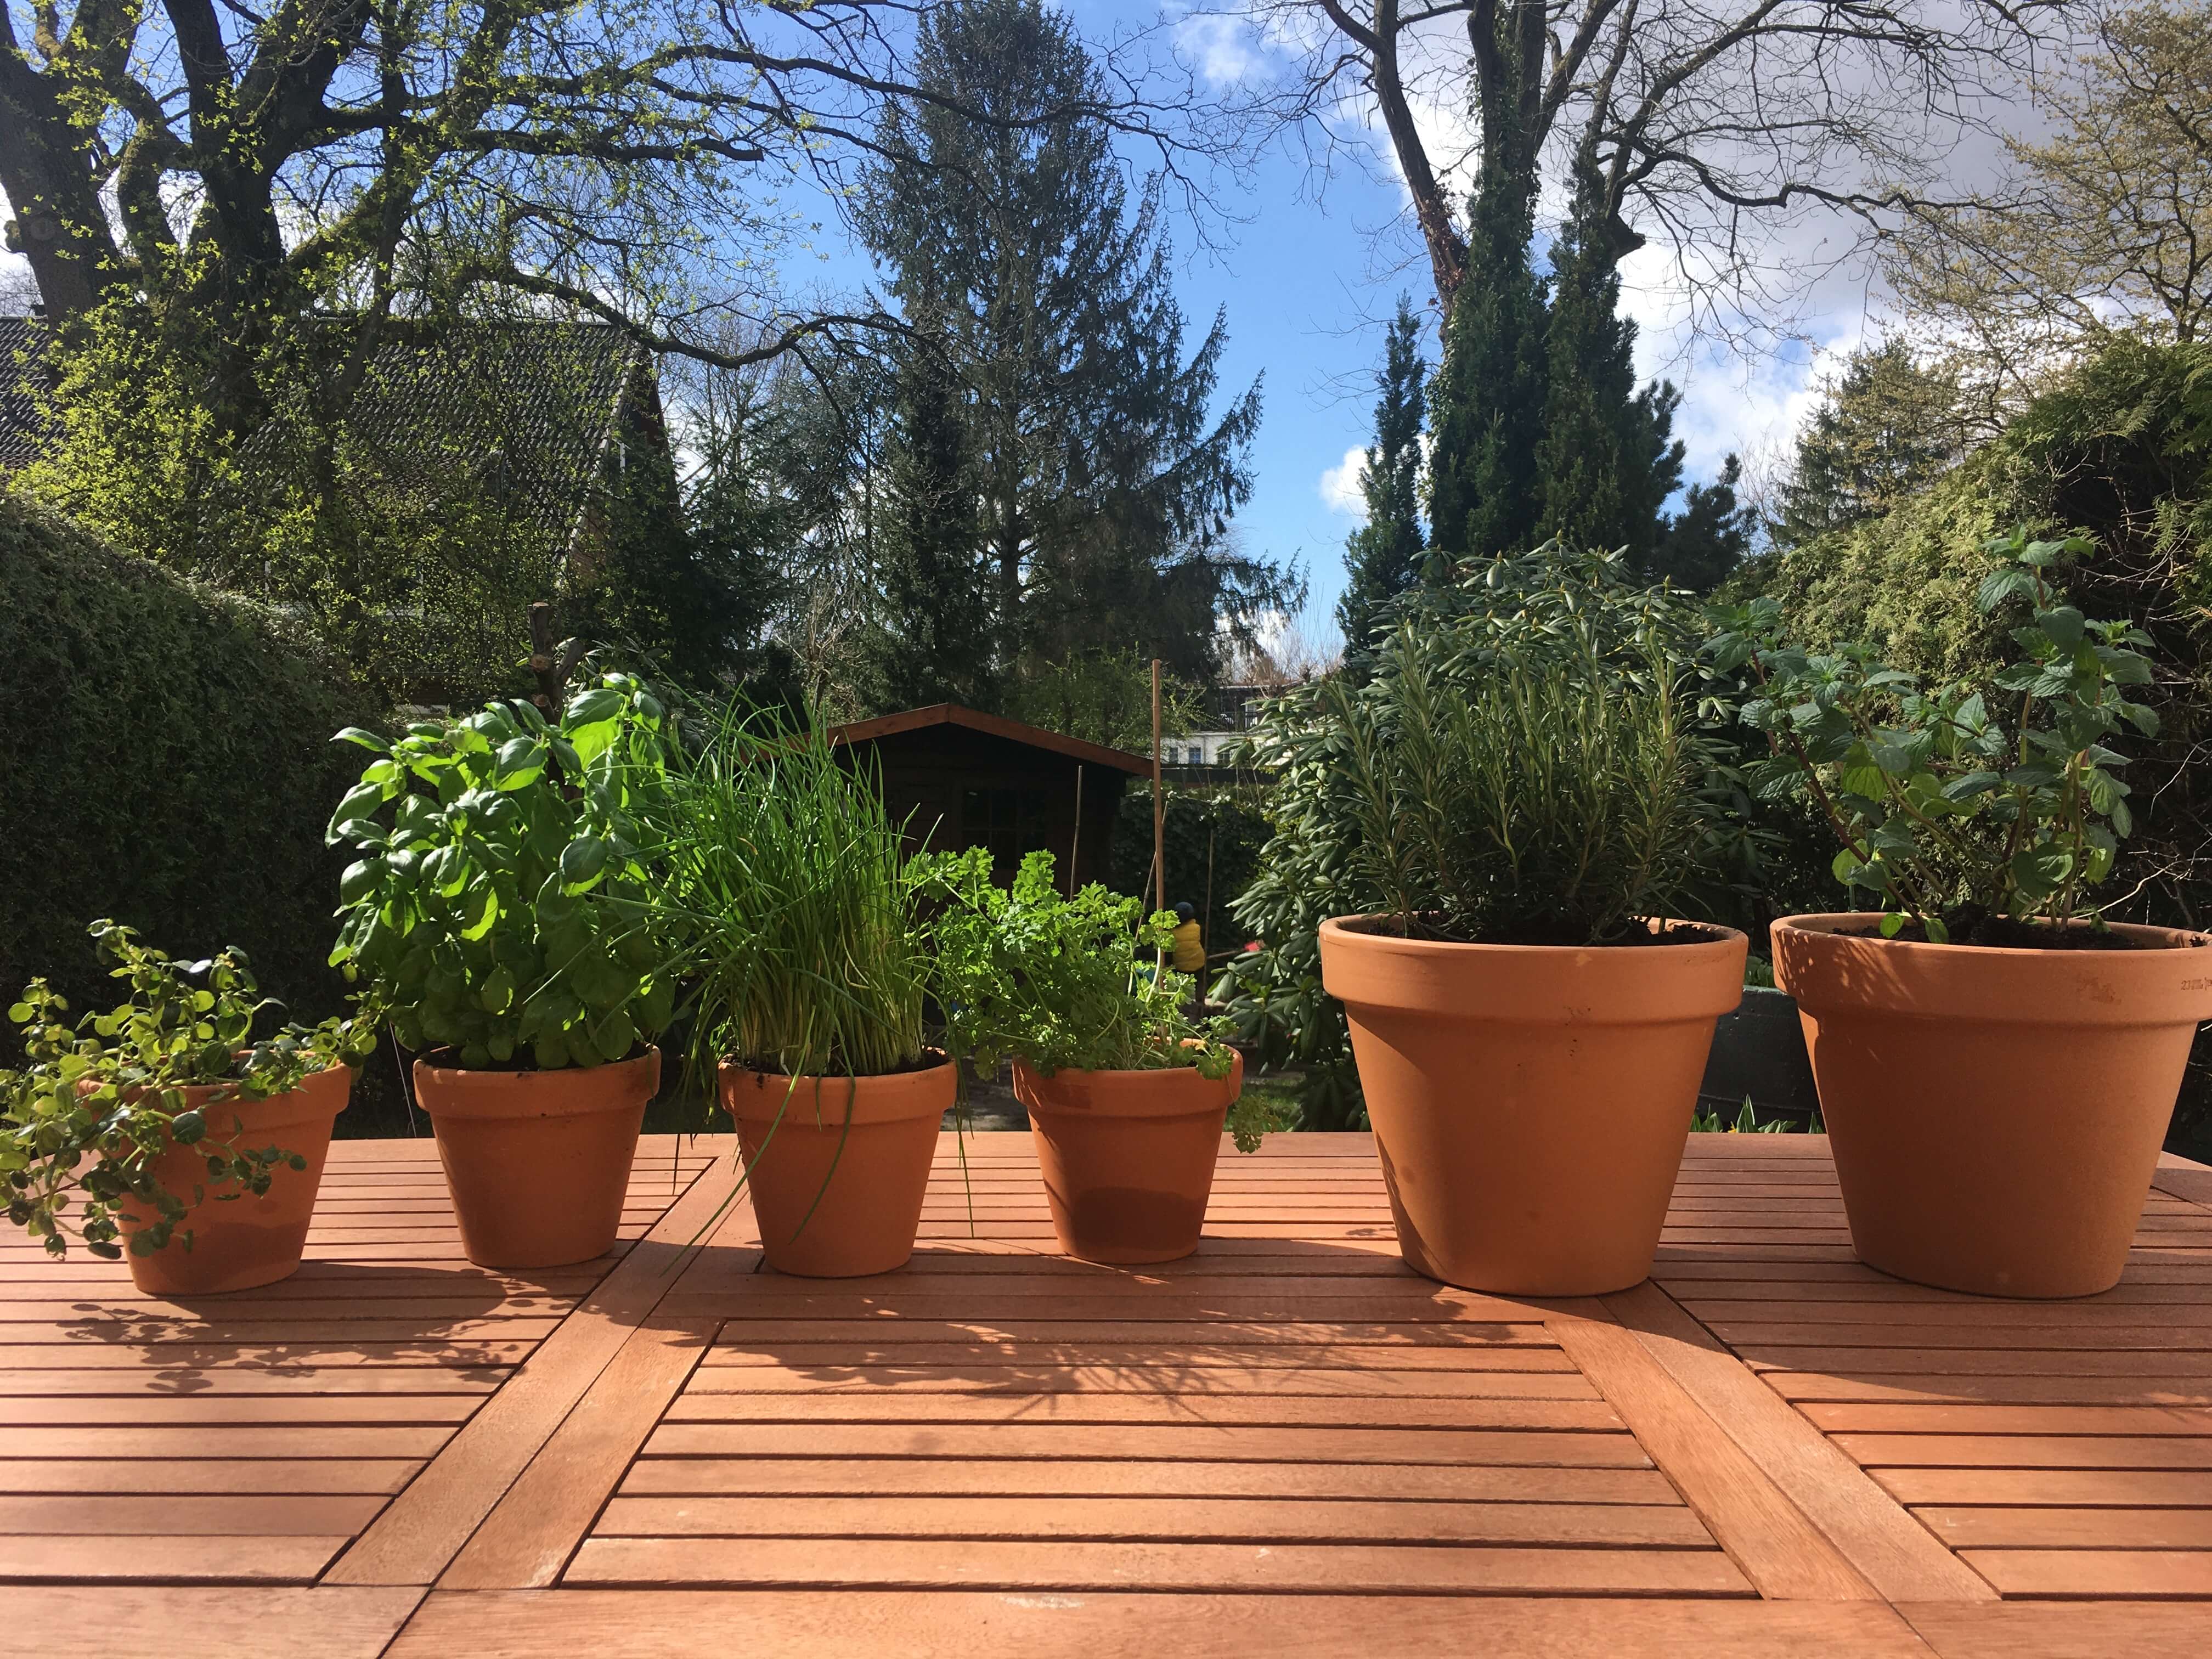 테라코타 화분들이 햇살가득한 정원 탁자에 6개 줄지어 놓여져있는 사진